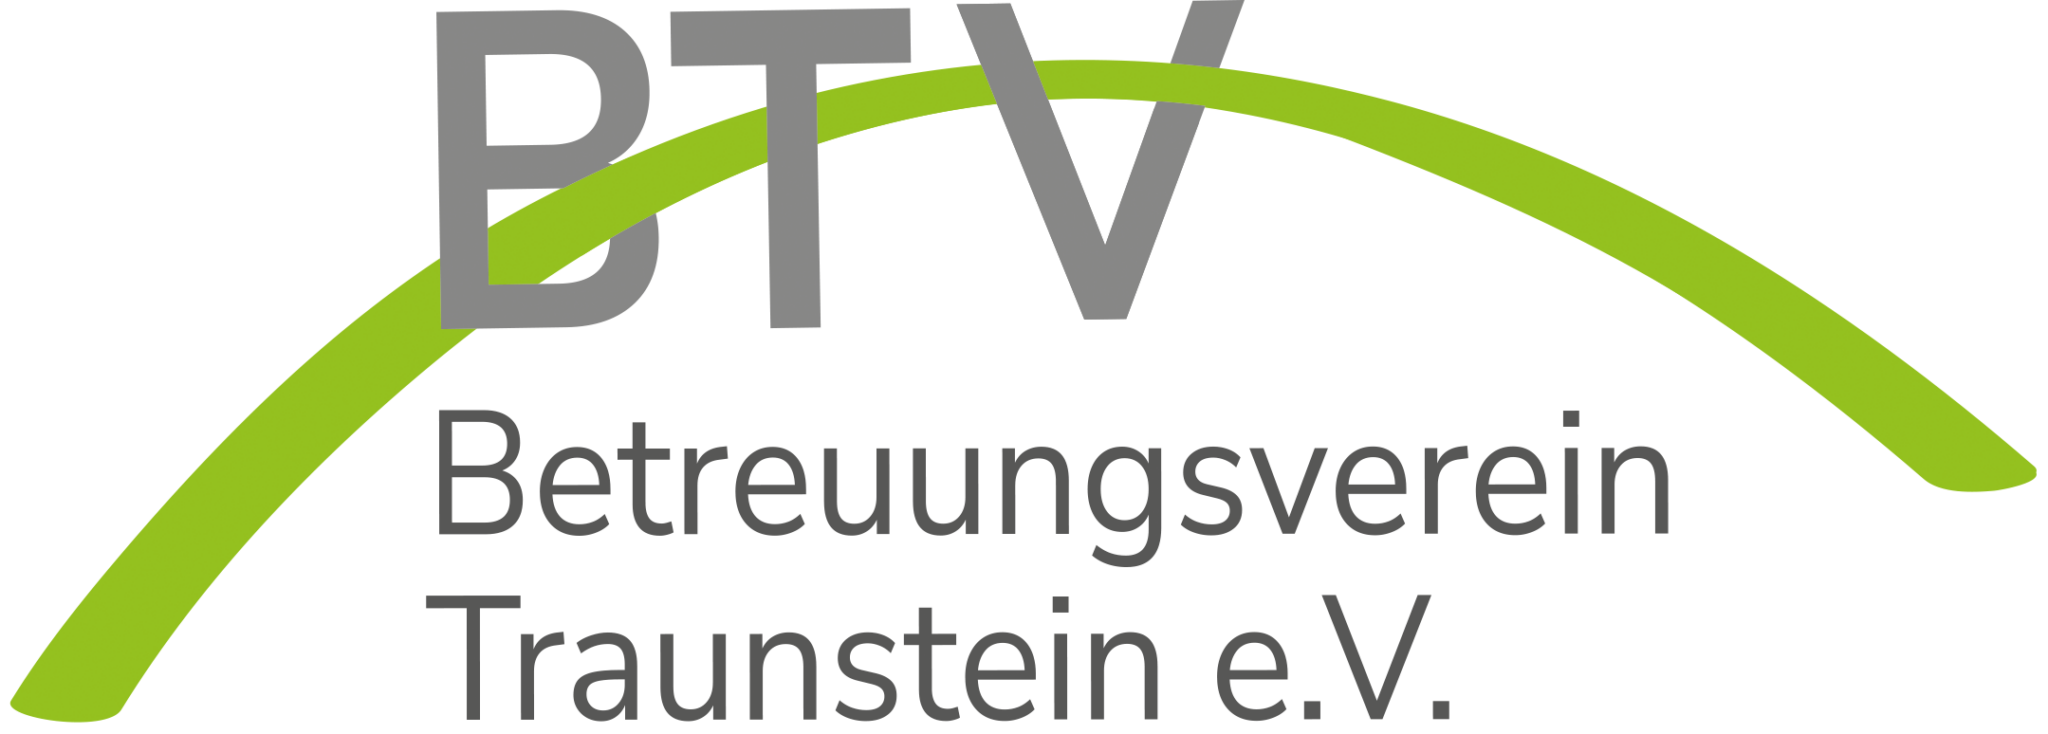 Betreuungsverein Traunstein e.V. Logo